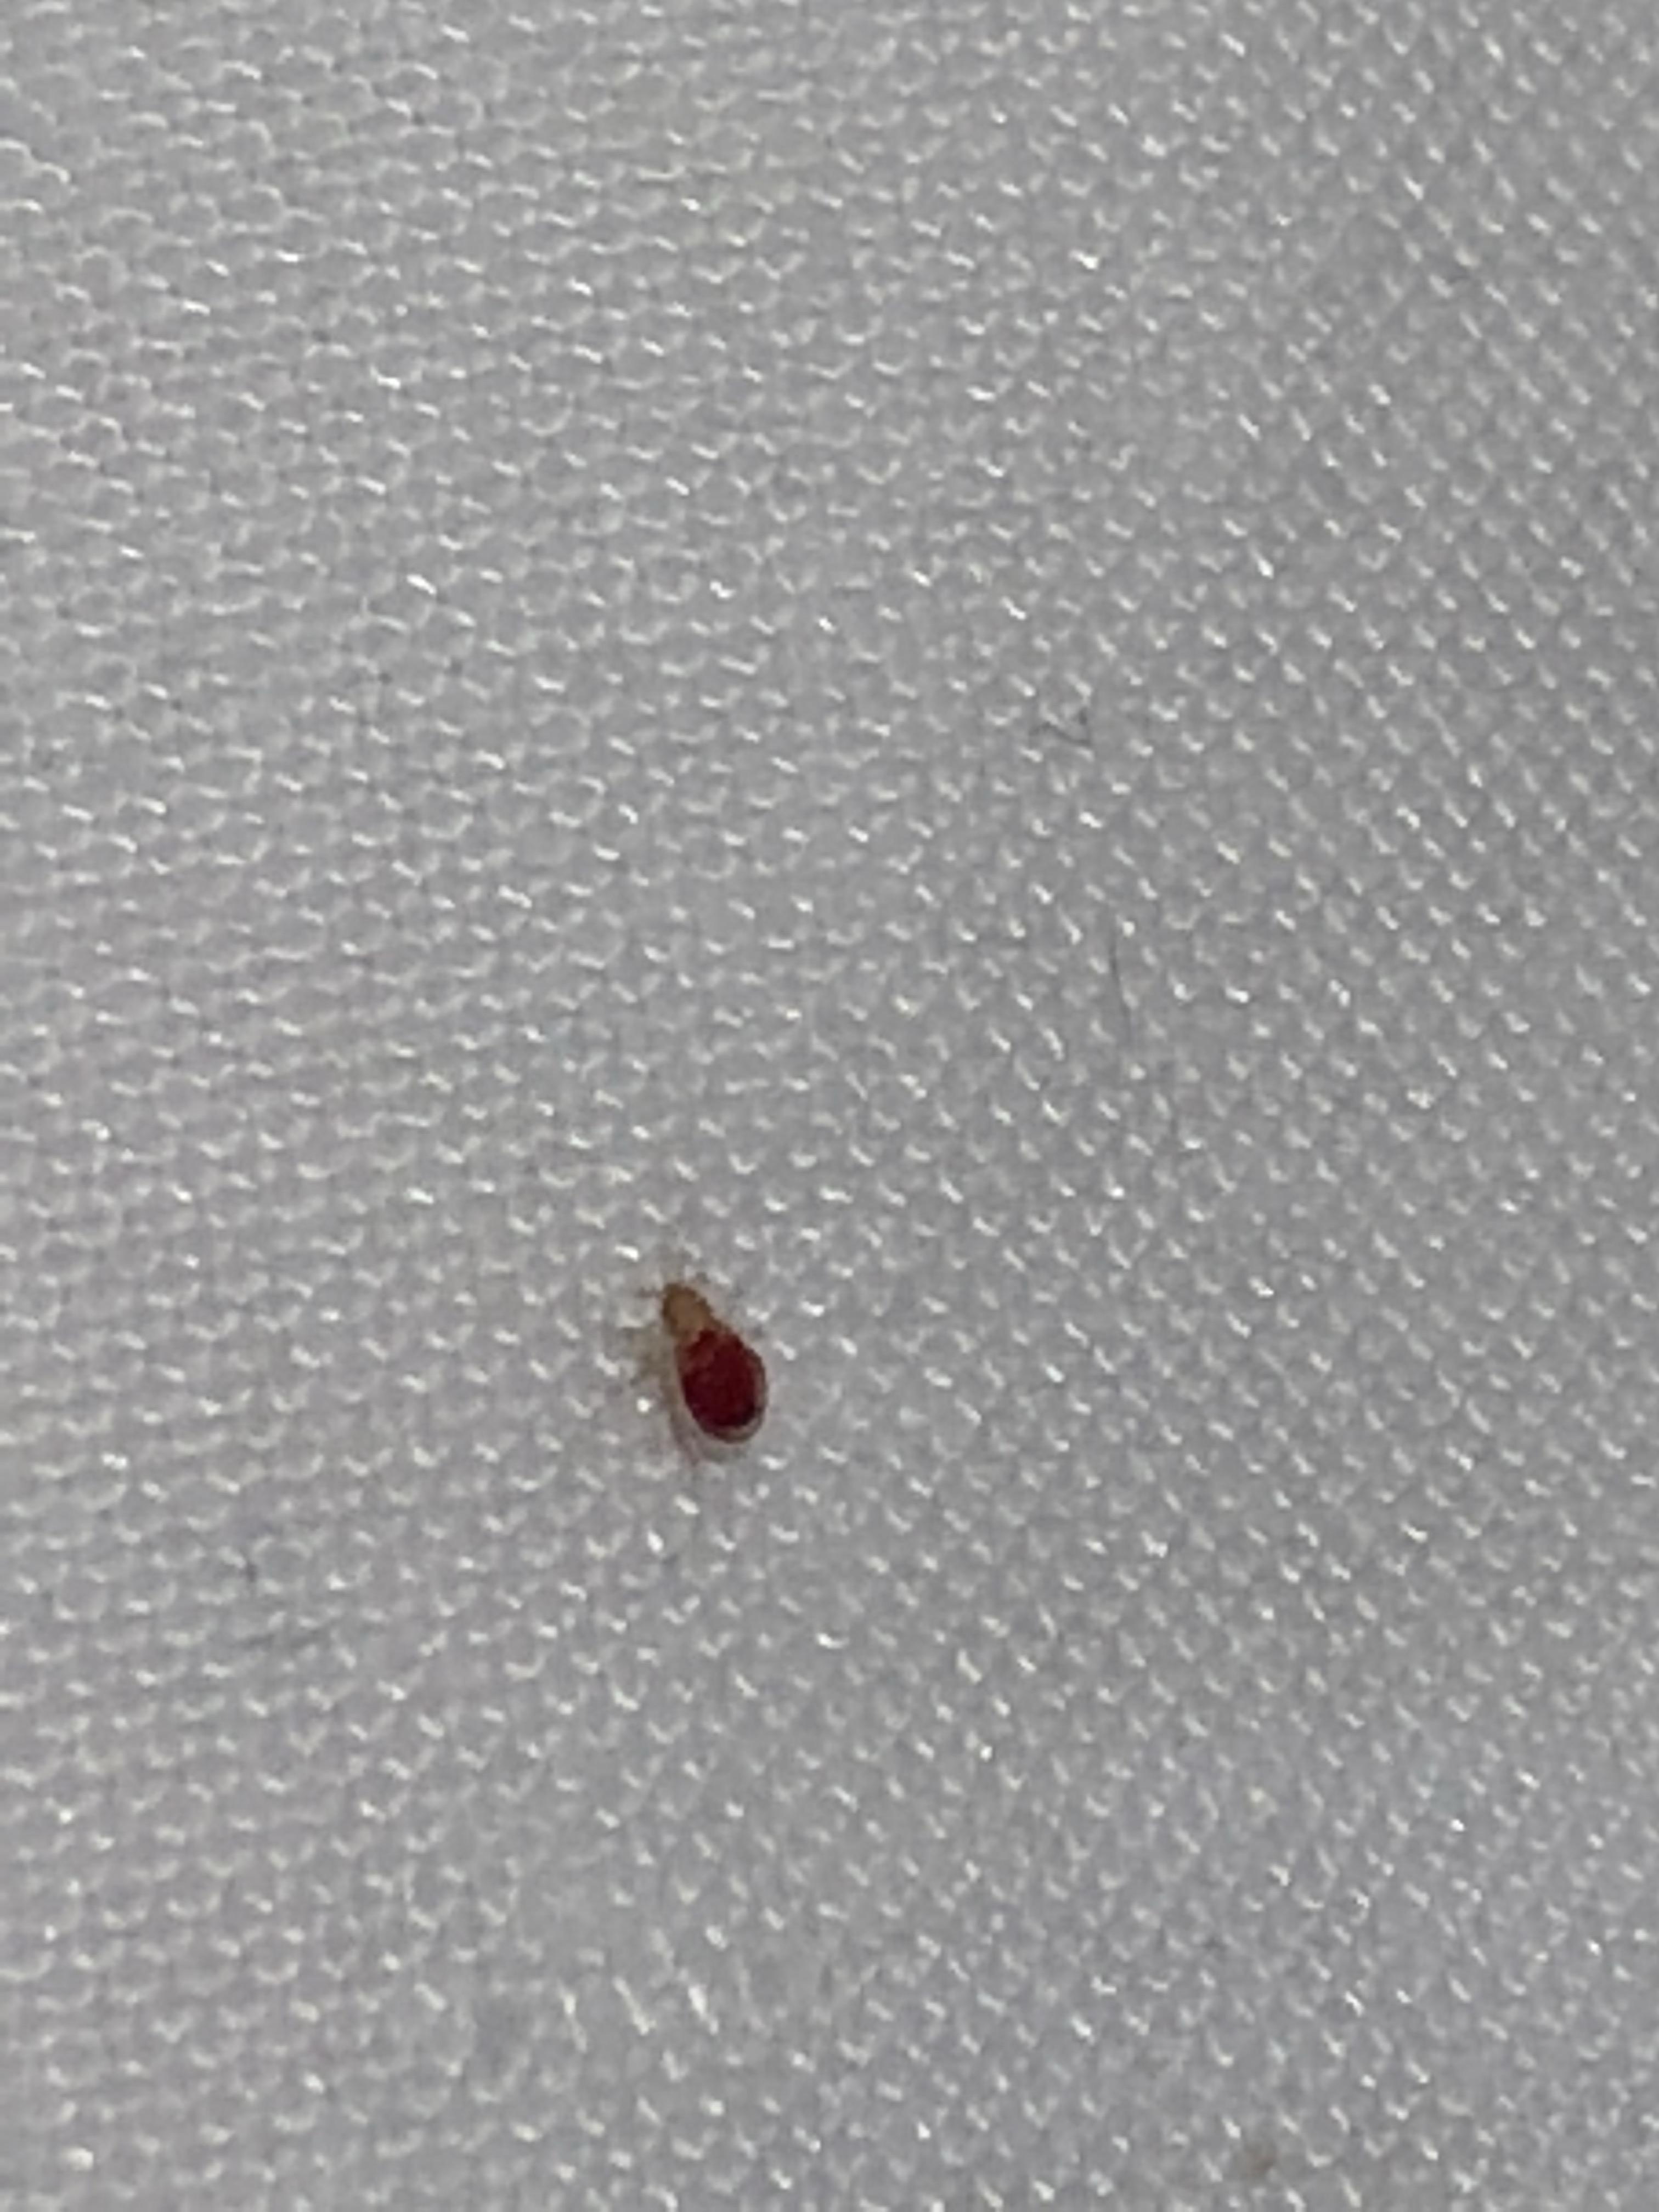 内有图慎点！大半夜在床上发现这个超级小的红色虫子这虫咬人吗？